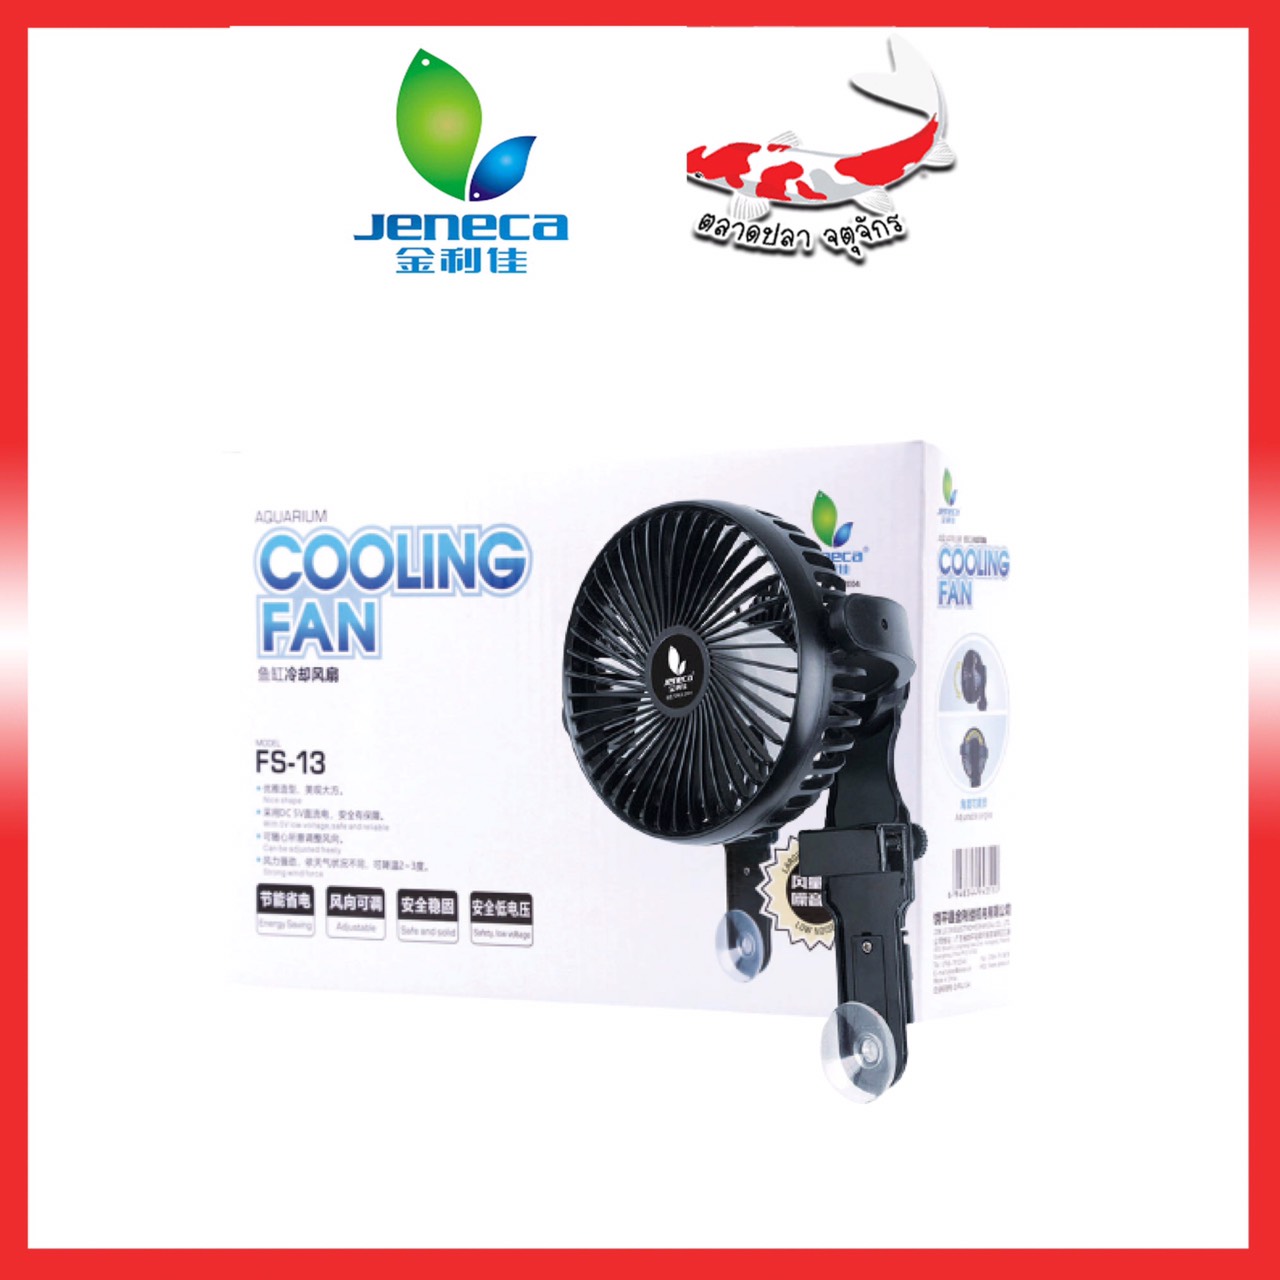 พัดลมตู้ปลา พัดลมระบายความร้อน Jeneca Cooling Fan FS-13